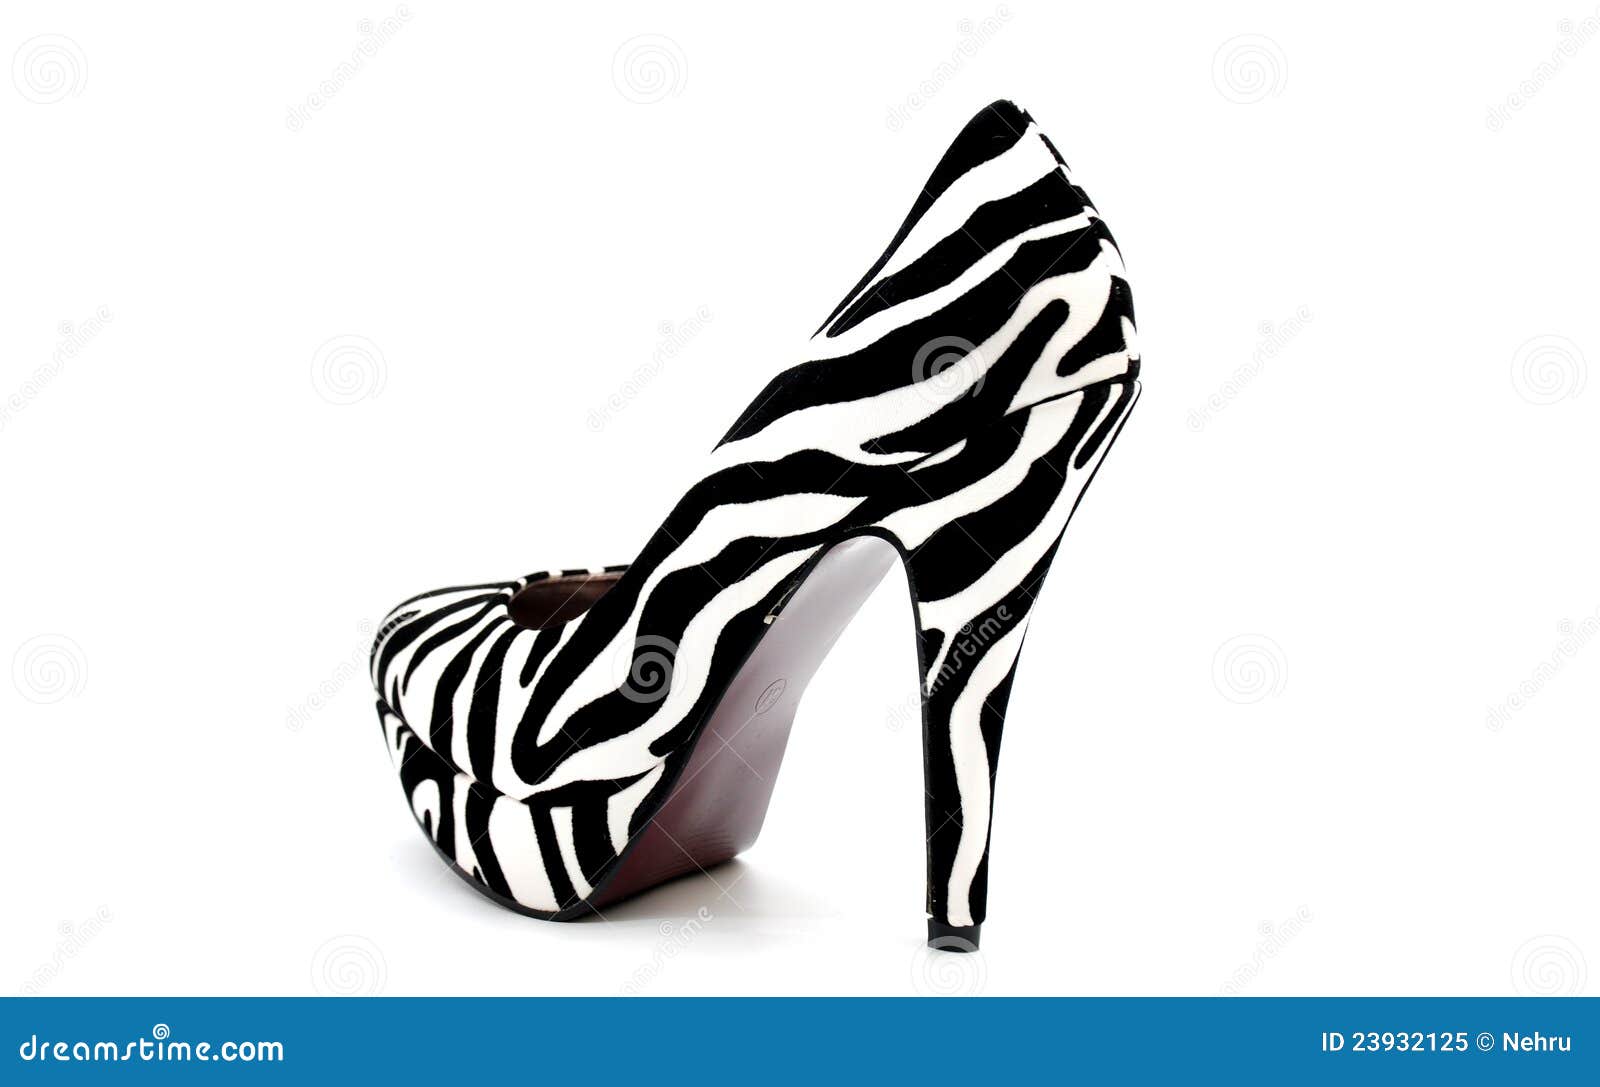 Men Platform Shoes PIMP-02 - Zebra, Funtasma